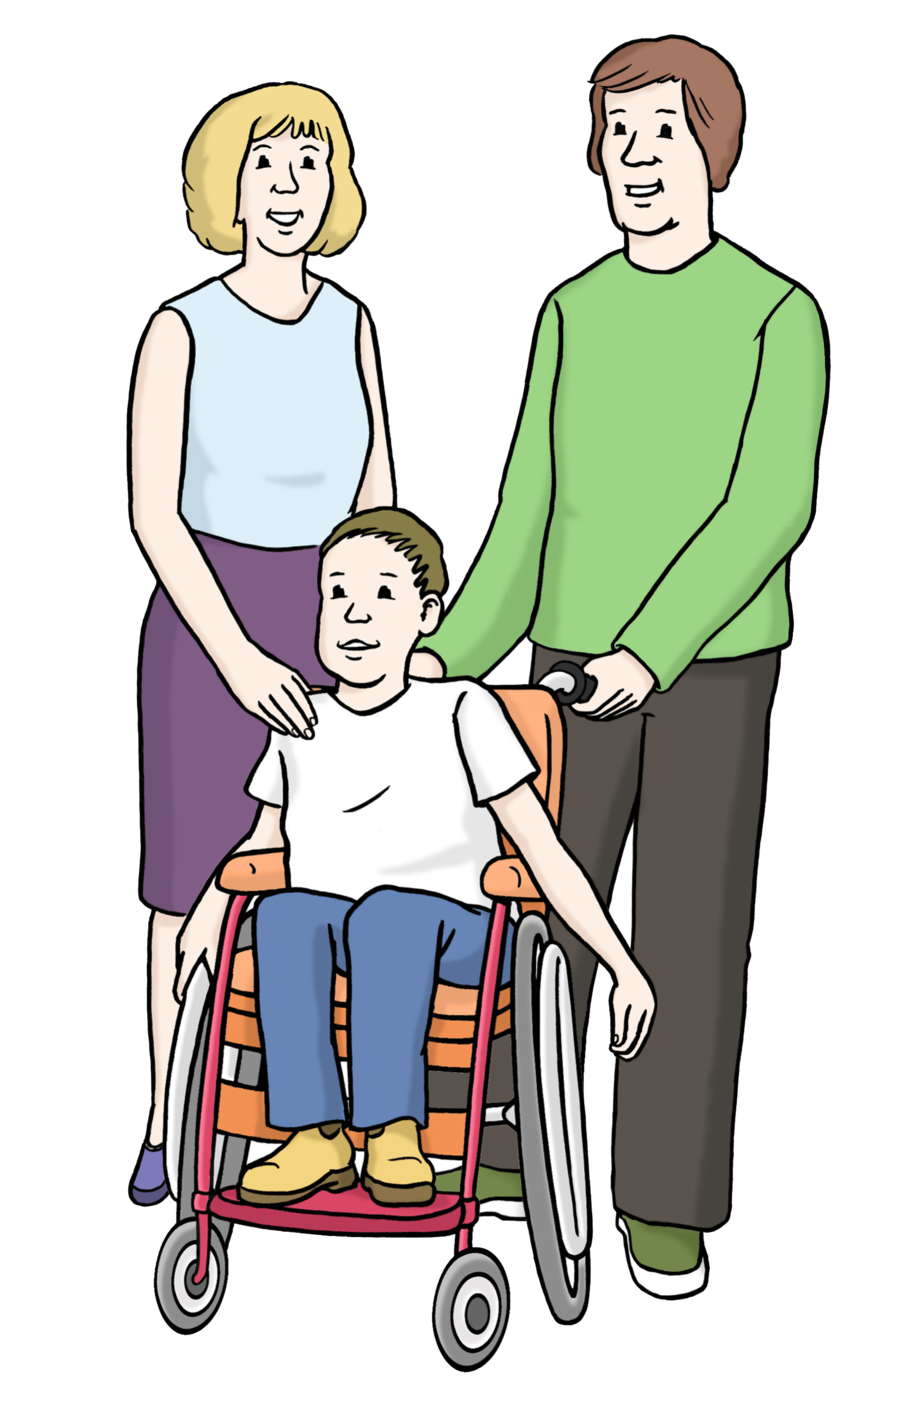 Farbige Zeichnung mit einer Frau, einem Mann und einem Jungen im Rollstuhl. Die Frau legt dem ungeen den Arm auf die Schulter, der Mann hat die Hände an den Schiebe-Griffen des Rollstuhls. Der Junge hat seine Hände an den Rädern seines Rollstuhls.